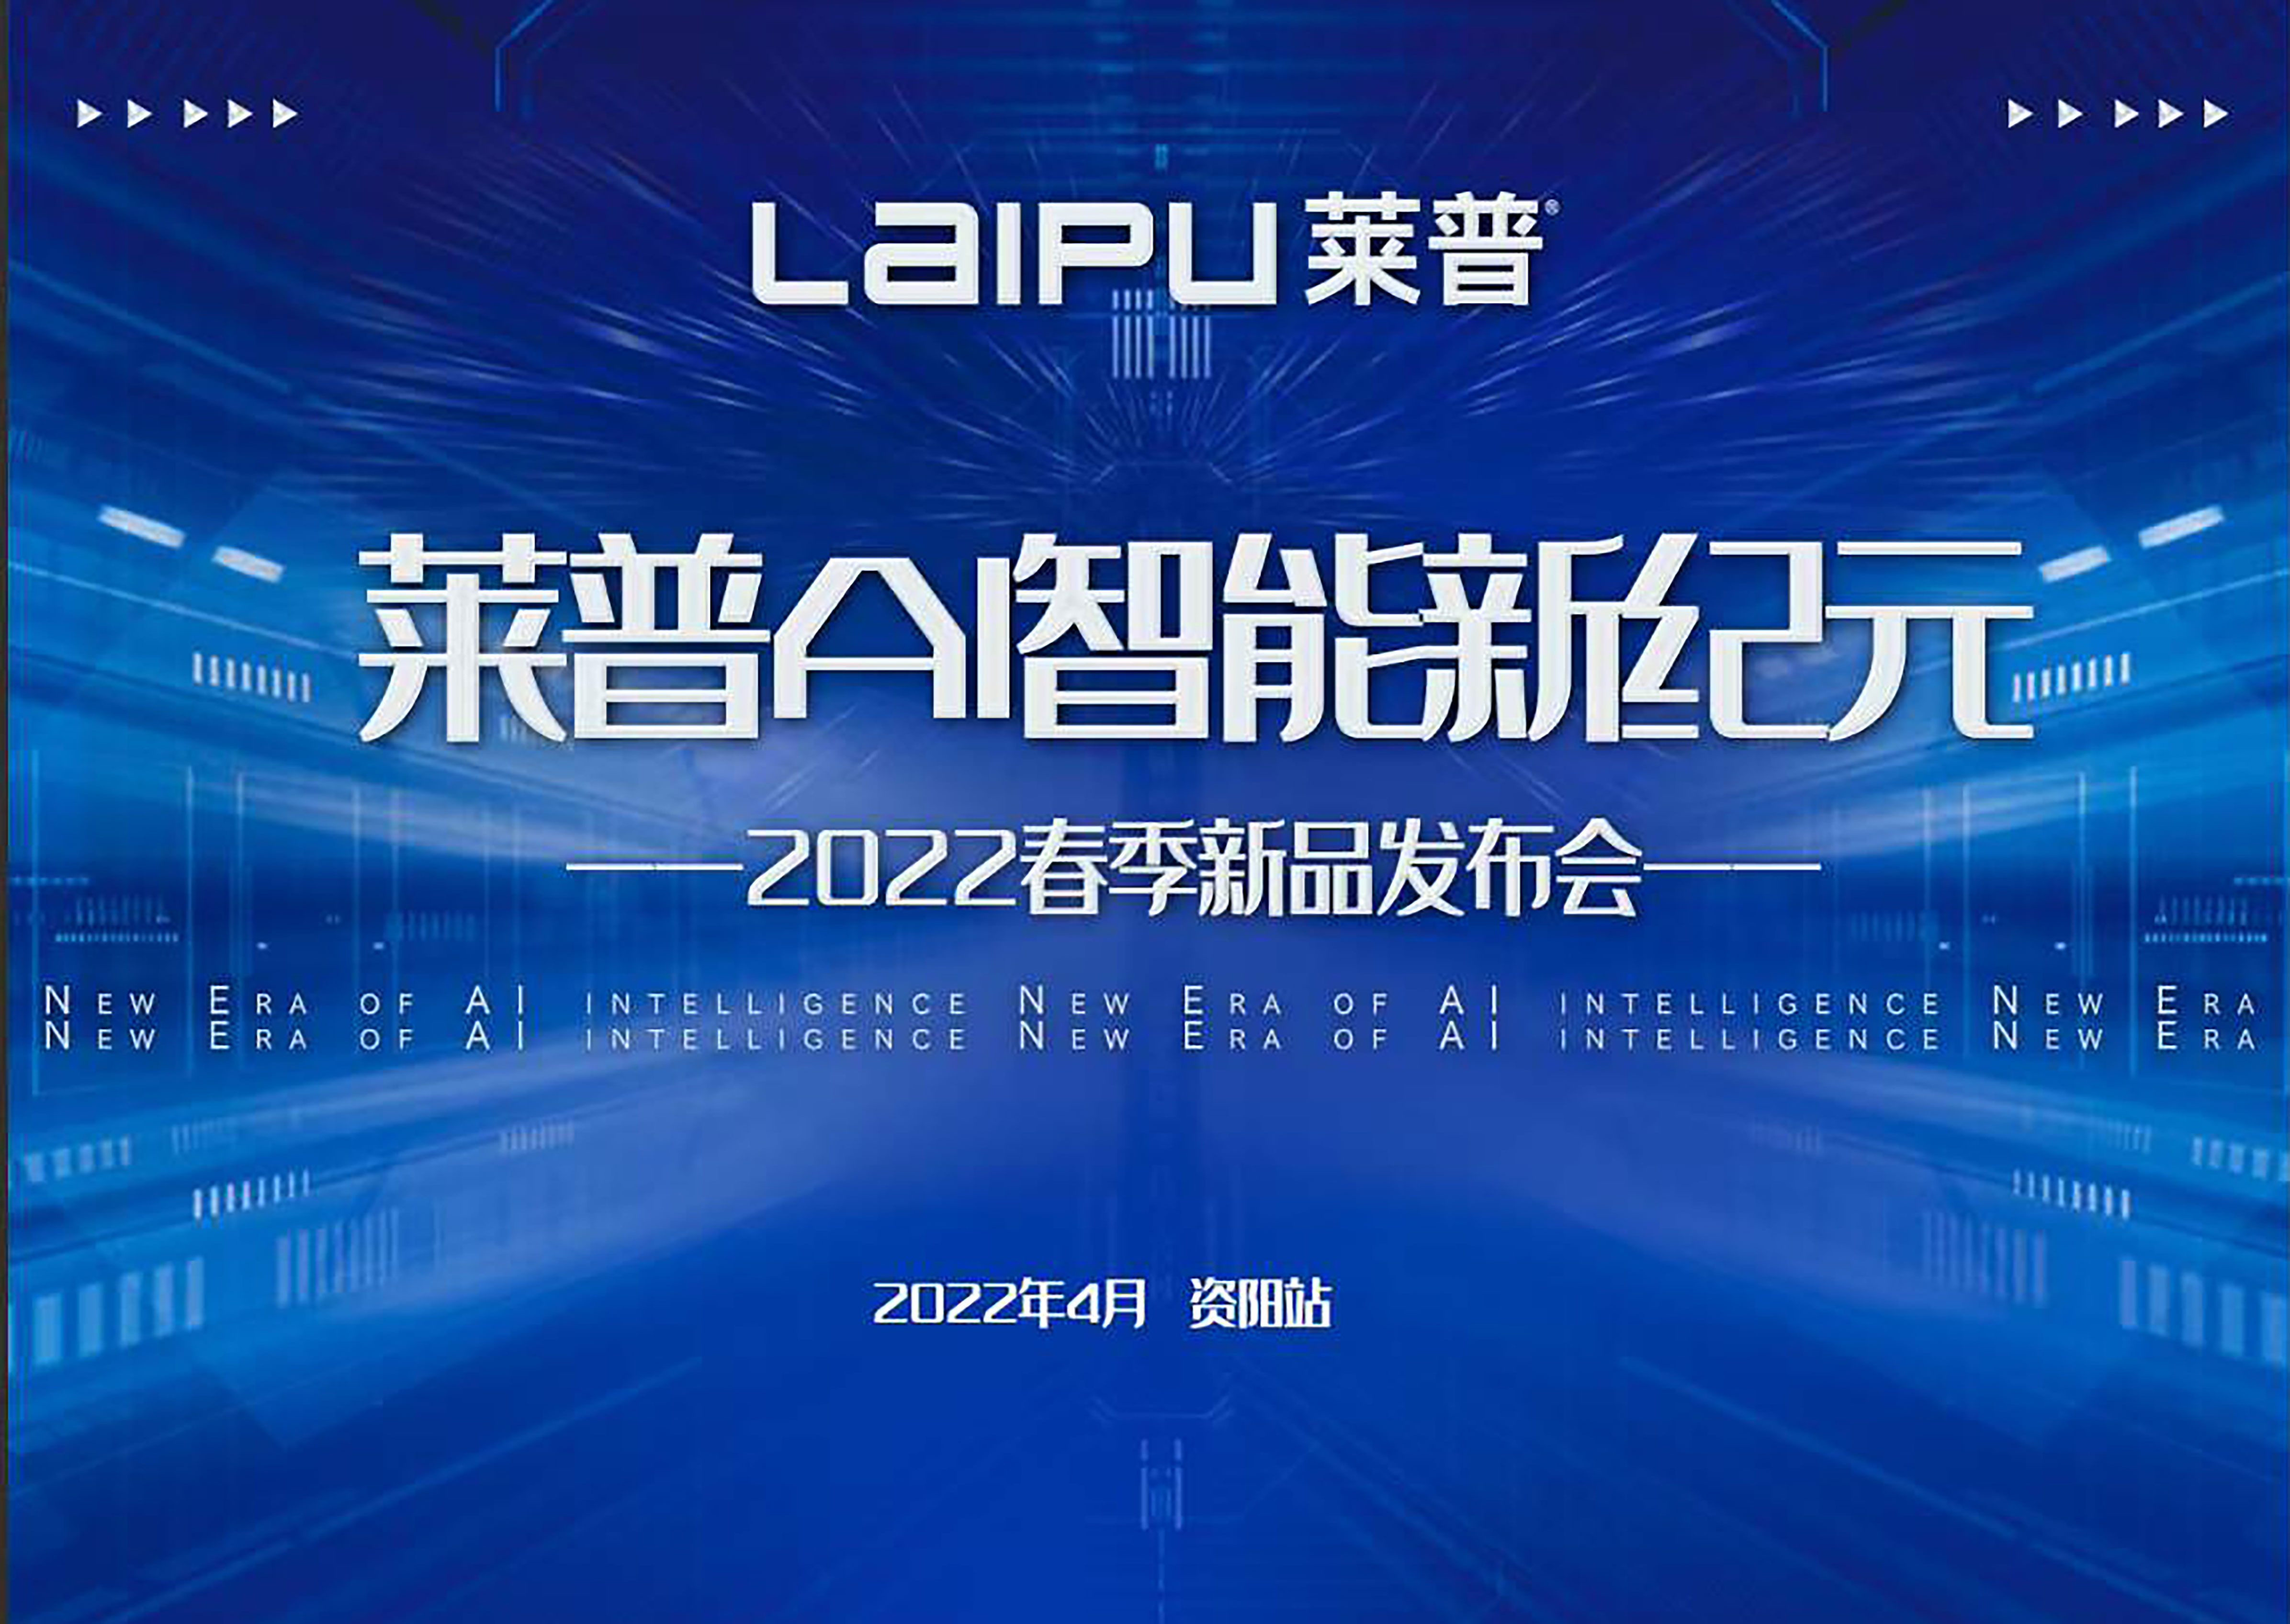 【预告】 莱普AI智能新纪元暨2022春季新品发布会即将盛大启幕！